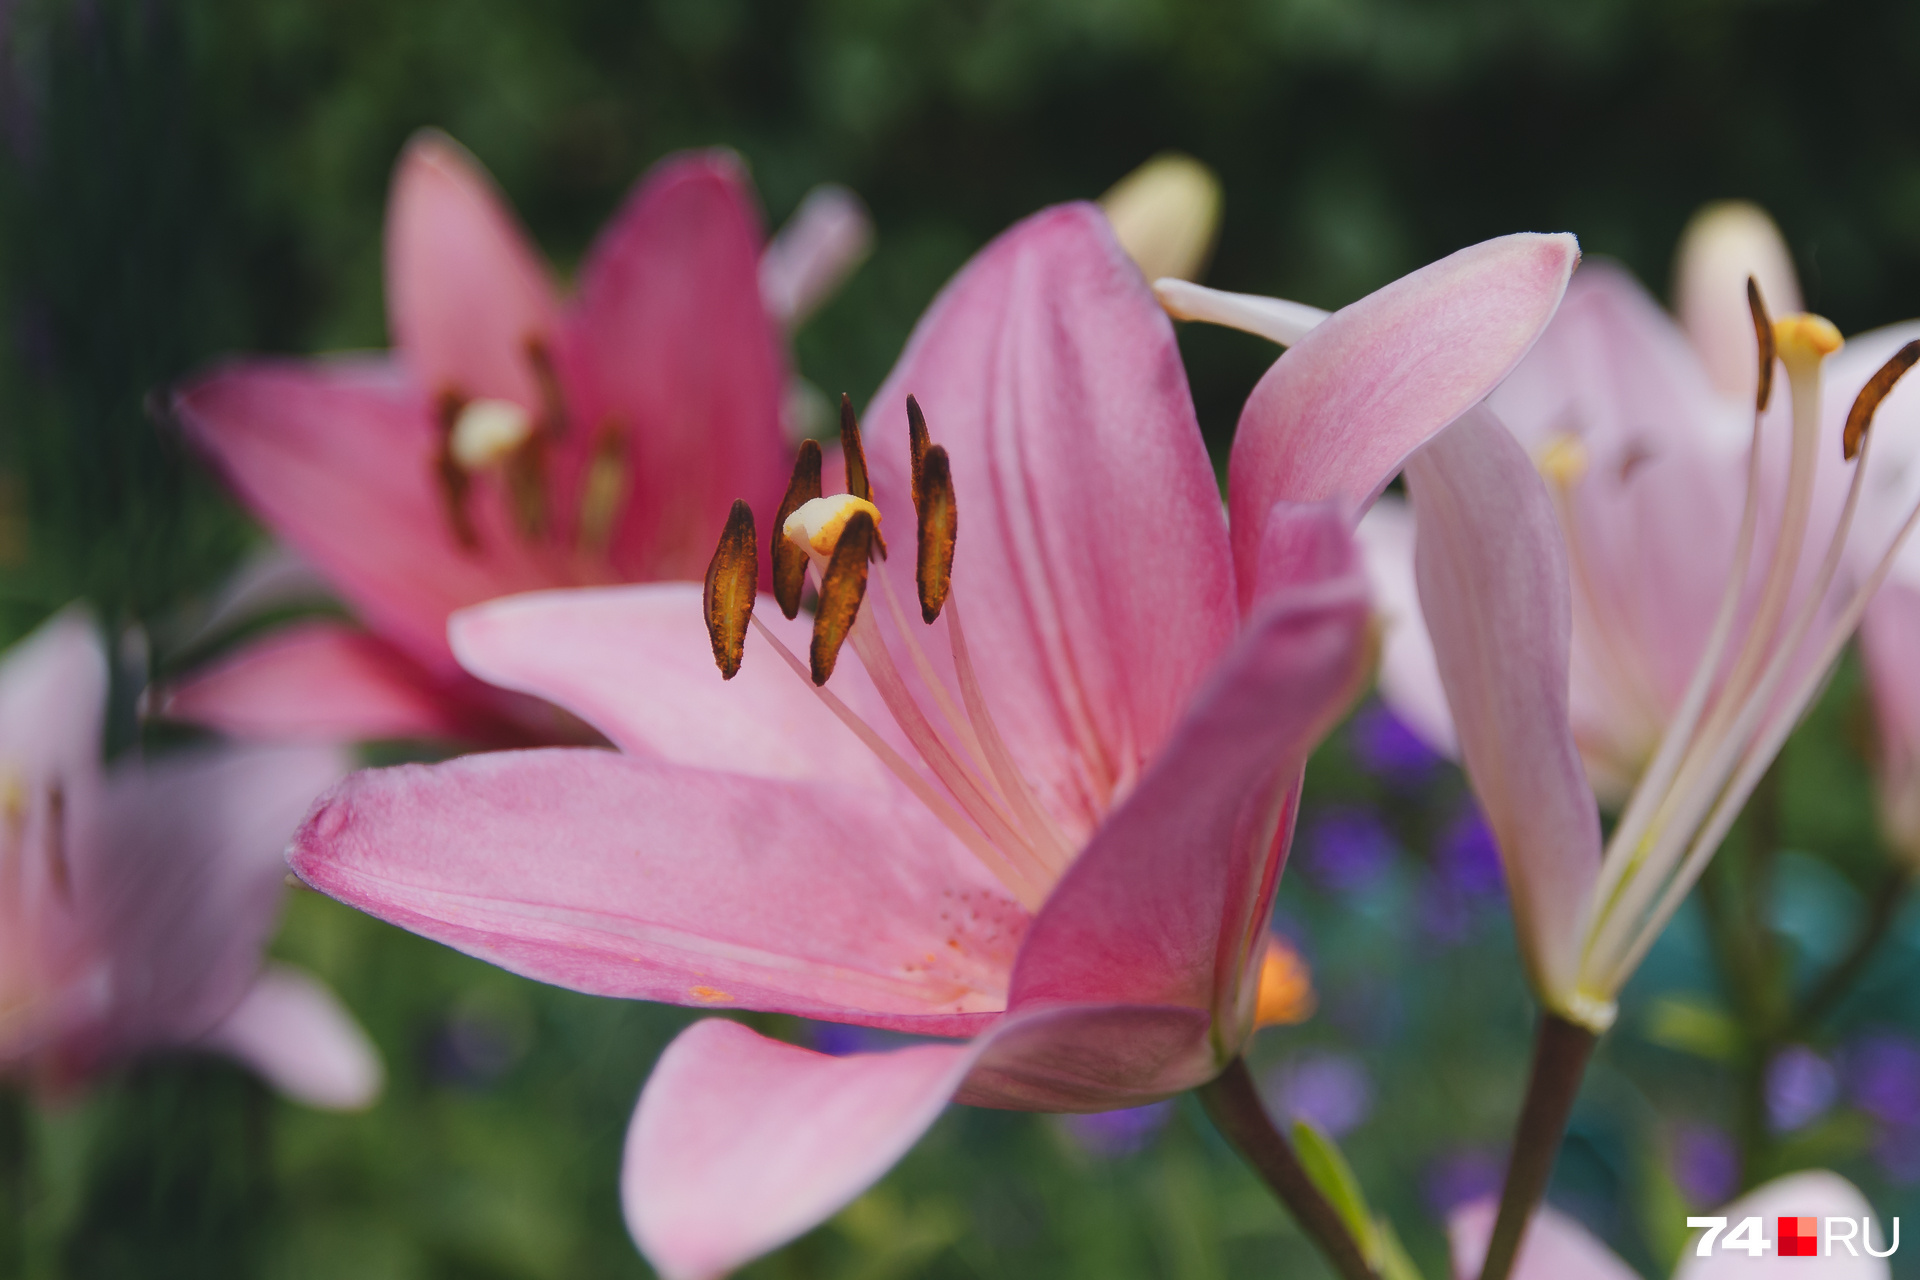 В этот раз мы попали на время цветения лилий и лилейника — в саду их множество самых разных оттенков